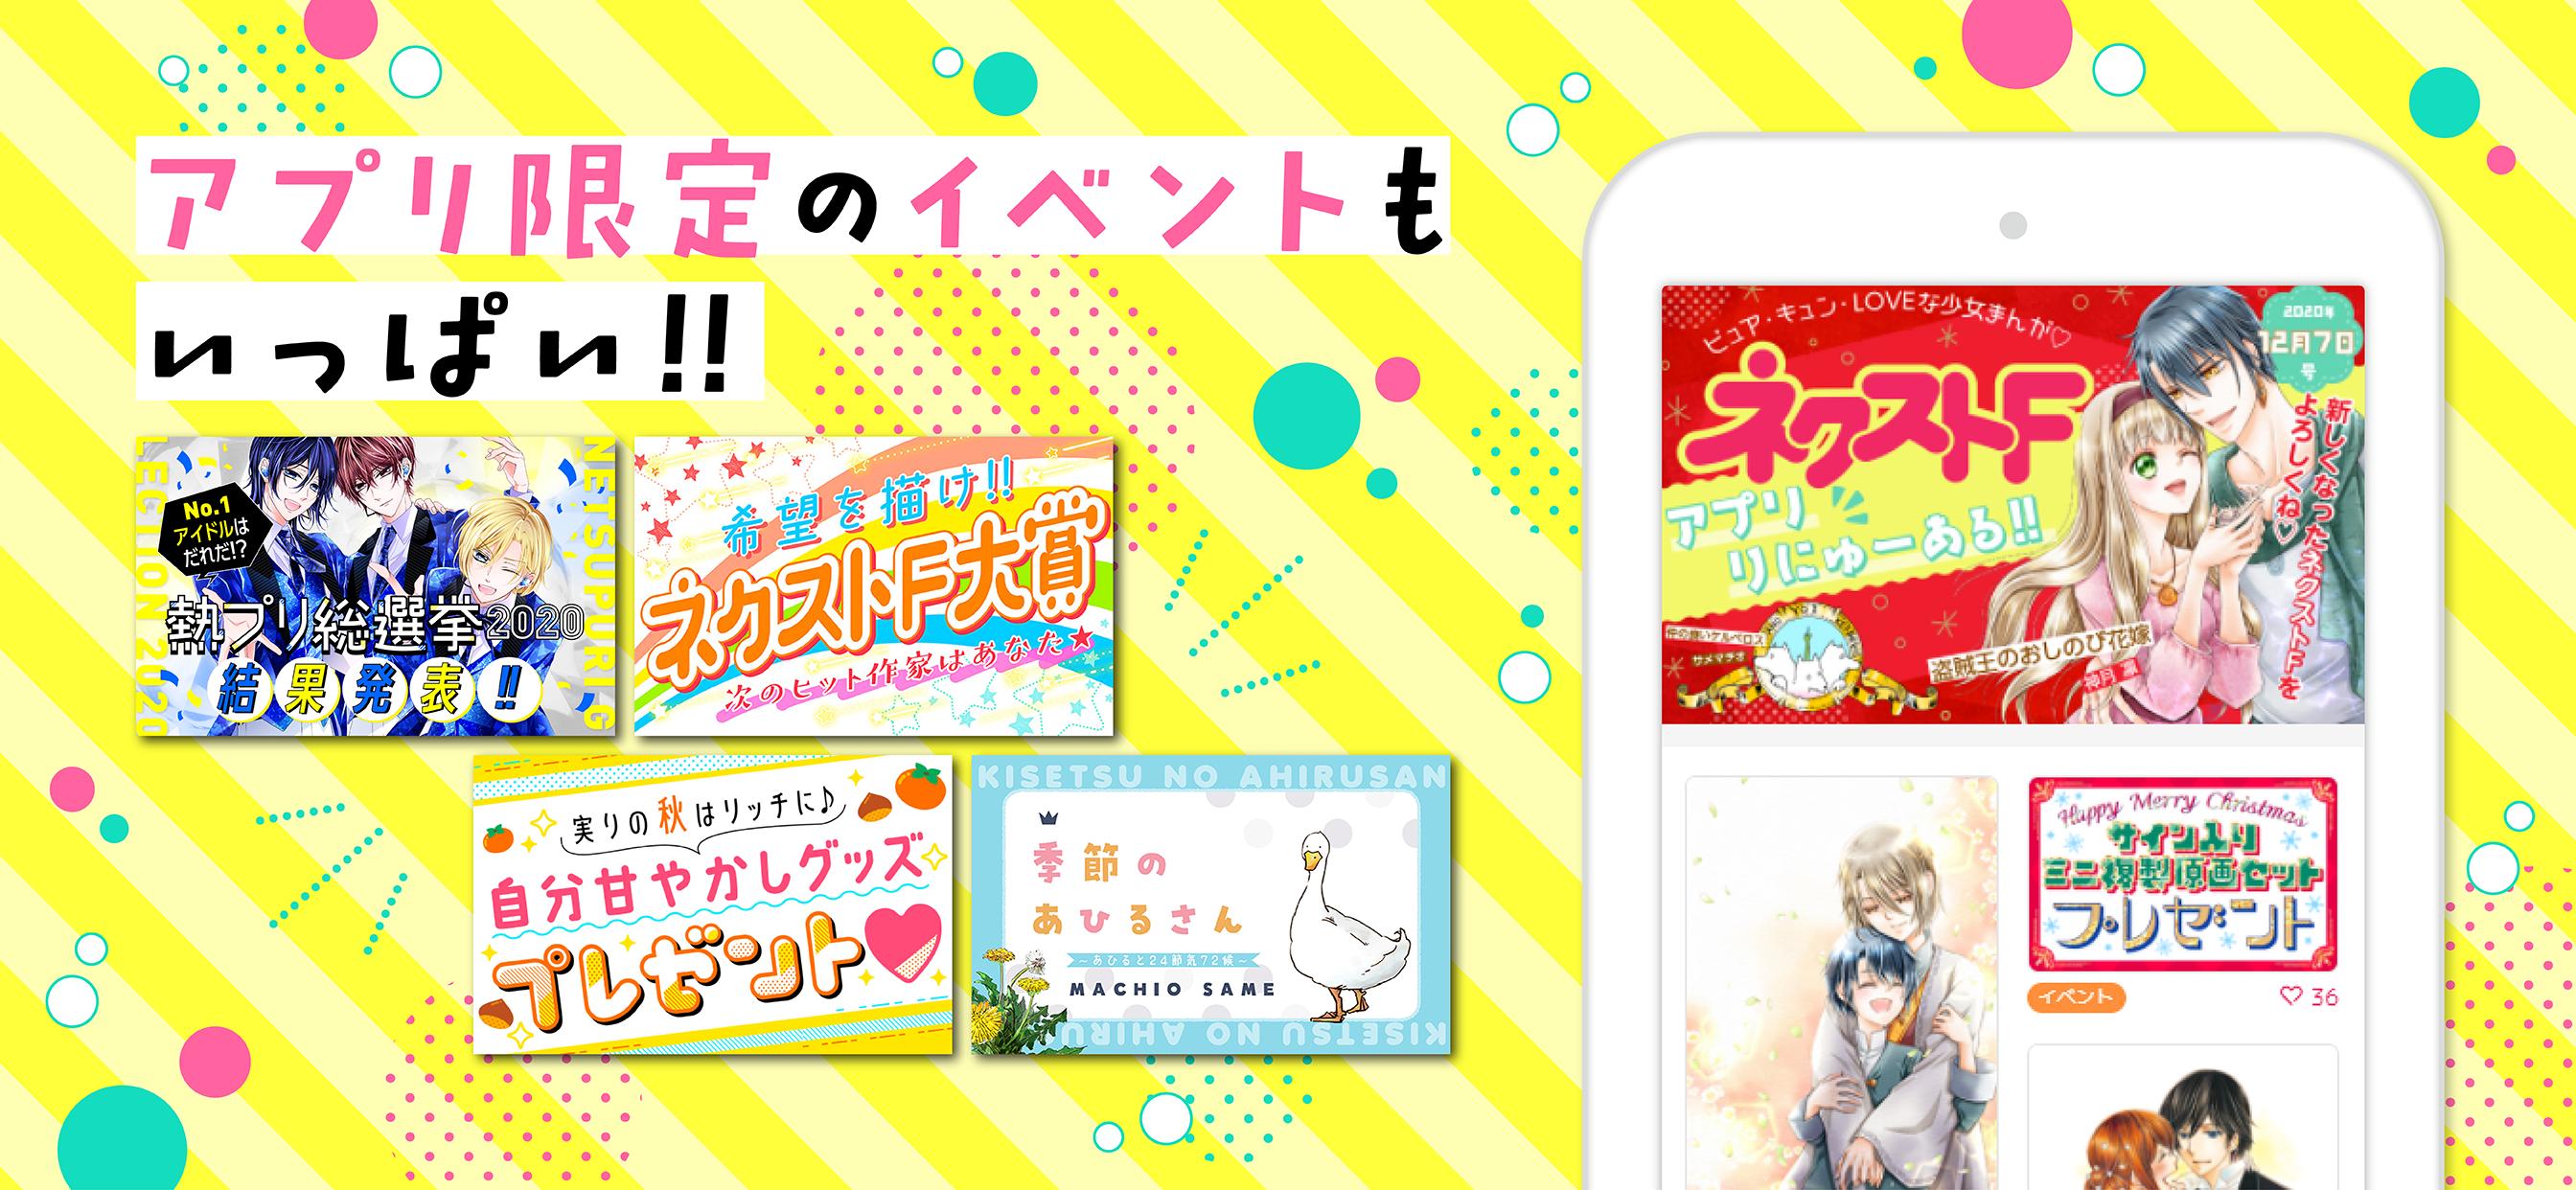 ネクストF 少女まんが雑誌アプリ 6.0.0 Screenshot 4